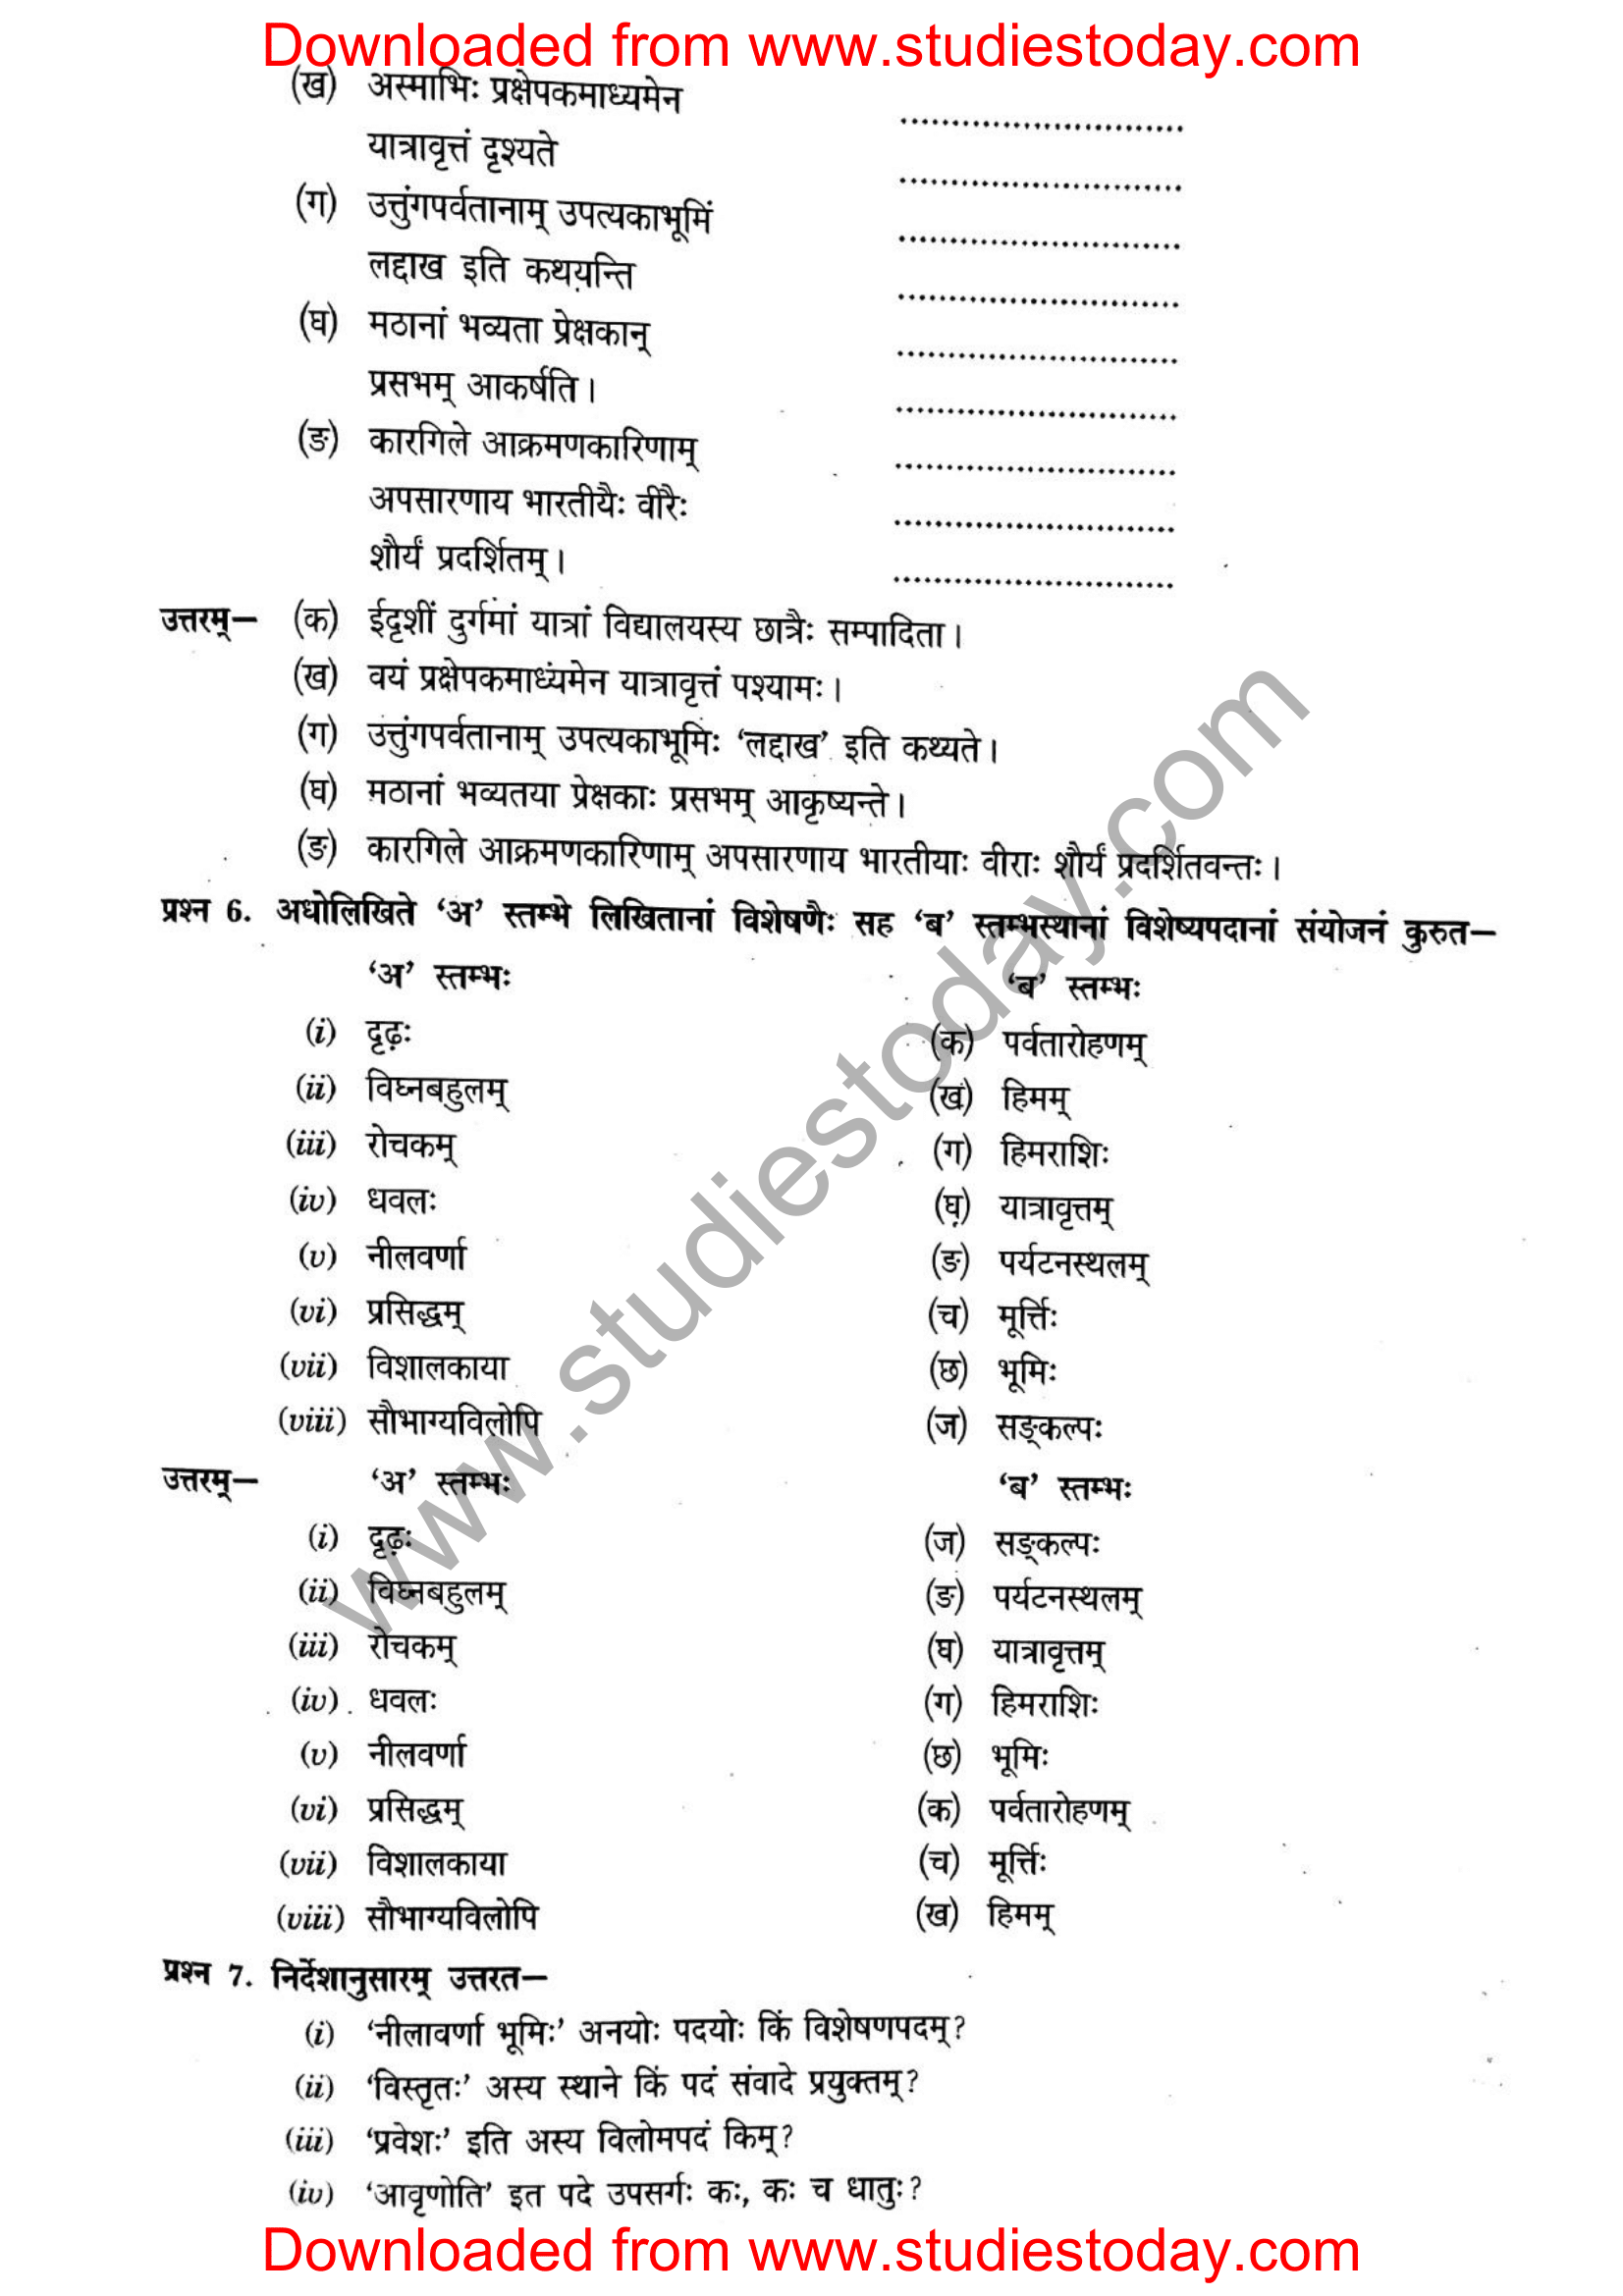 ncert-solutions-class-12-sanskrit-ritikia-chapter-5-08